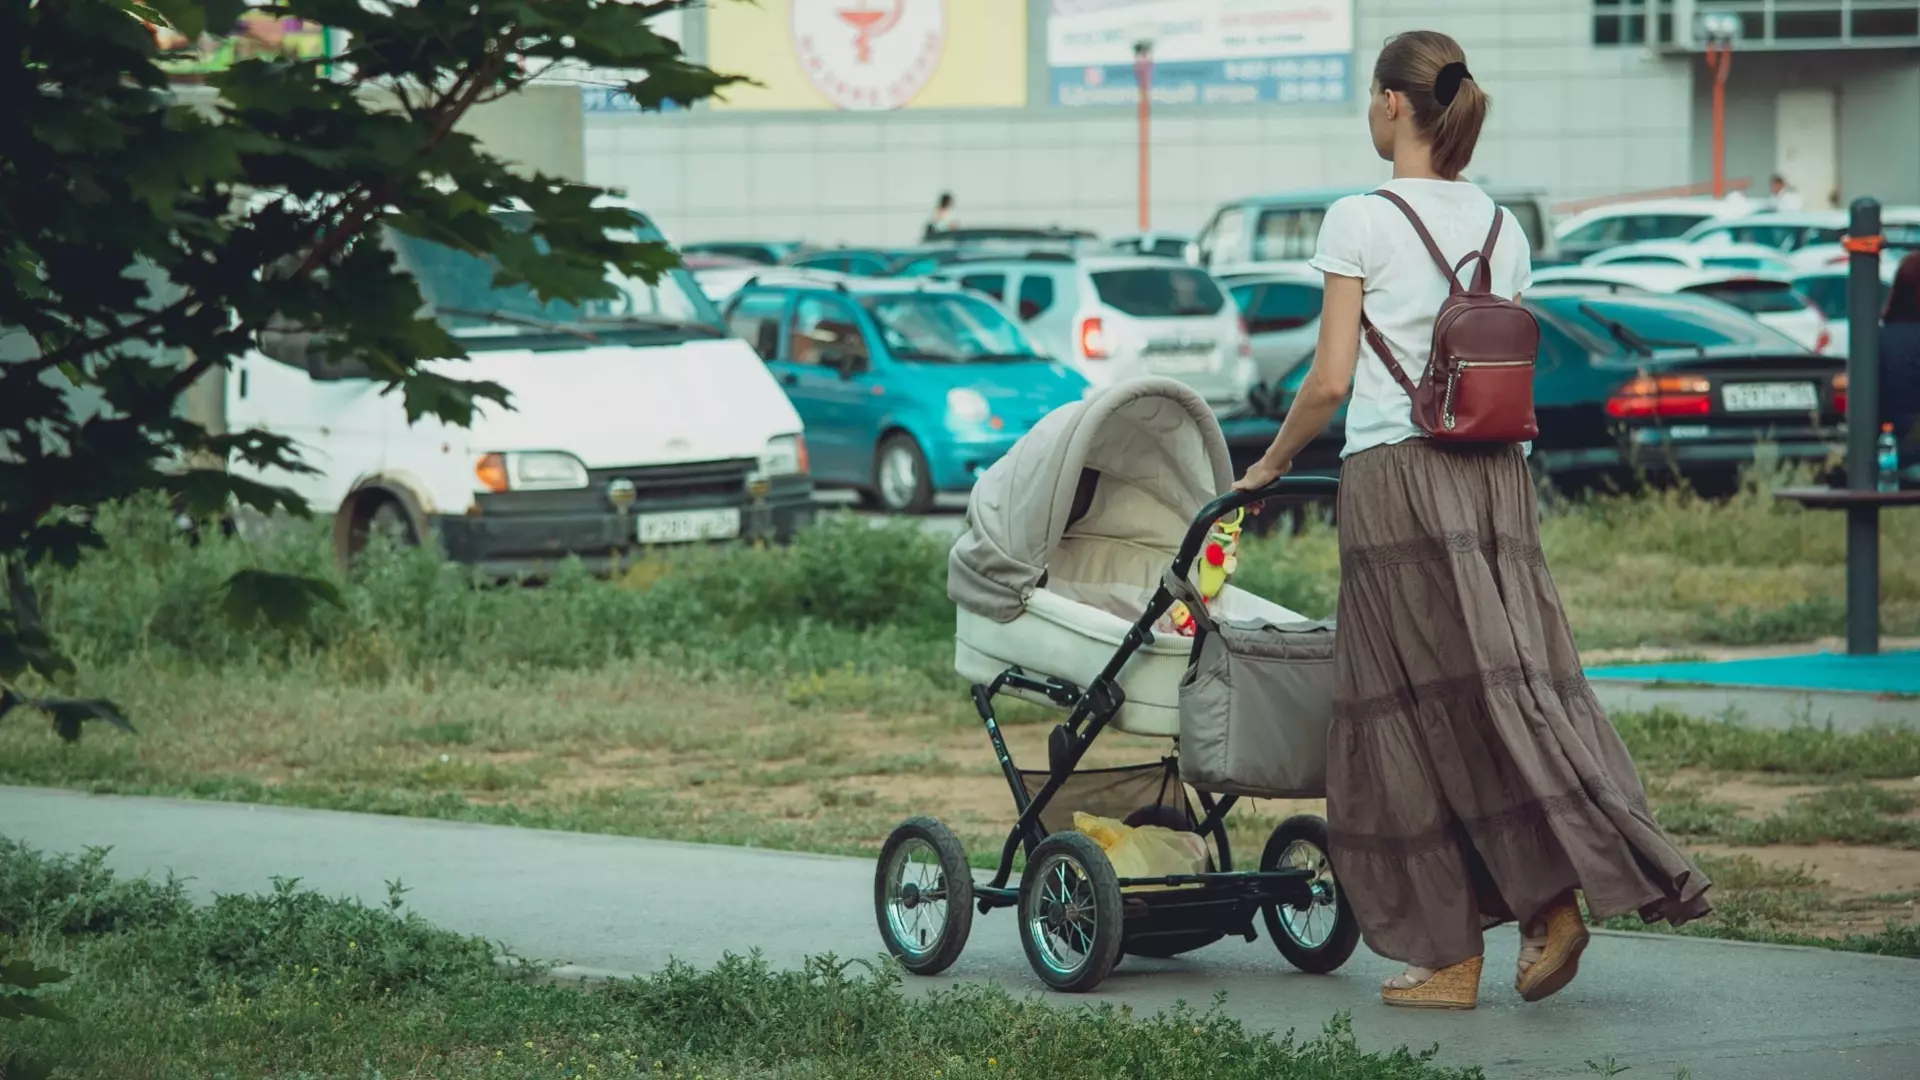 Сегогдня в украинской семье рождается в среднем только один ребенок